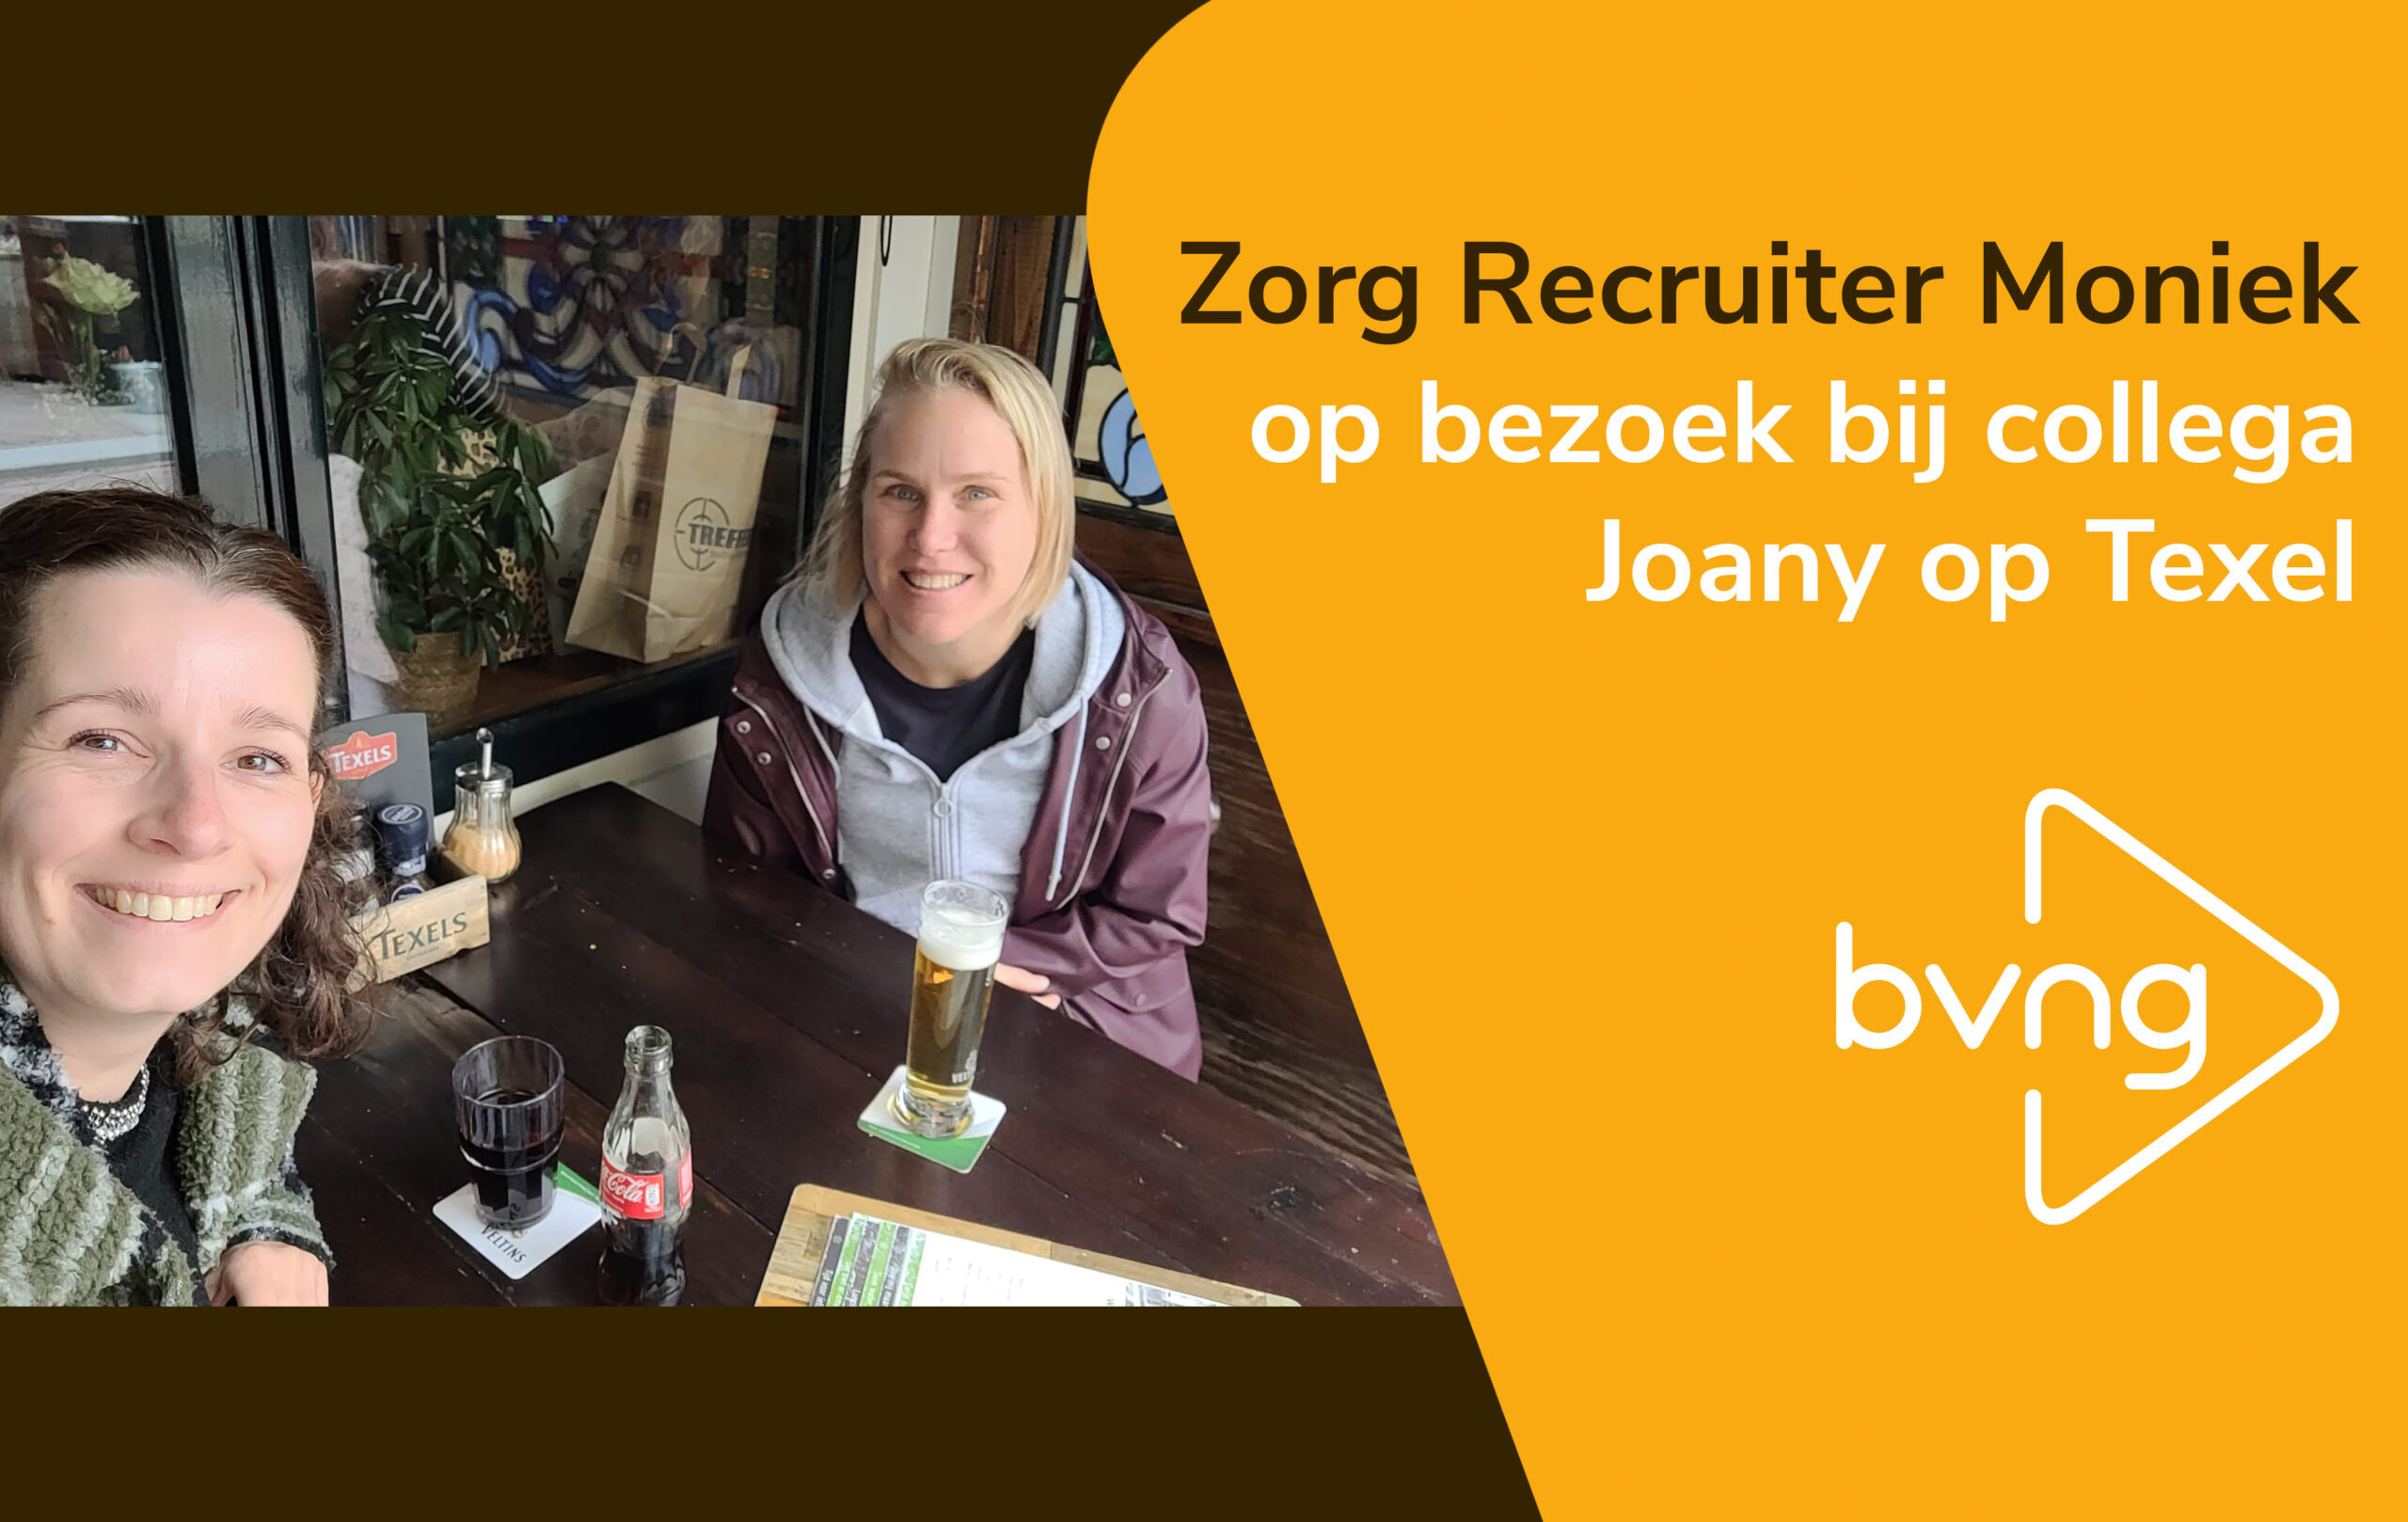 Op bezoek bij Zorg collega Joany op Texel